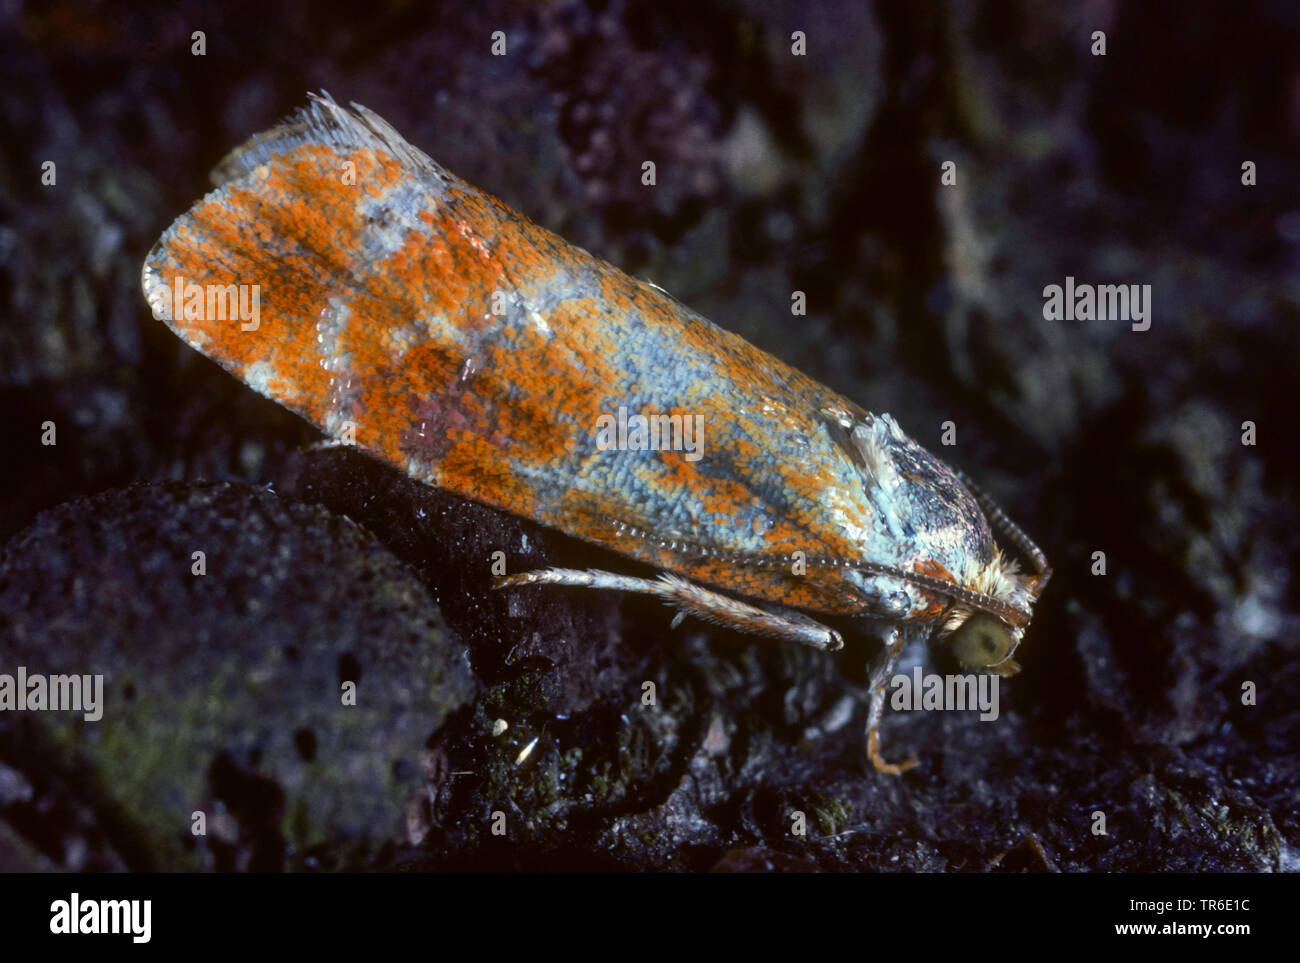 gemmed shoot moth, pine-sprout tortrix, European pine shoot moth (Evetria buoliana, Rhyacionia buoliana), imago, side view, Germany Stock Photo